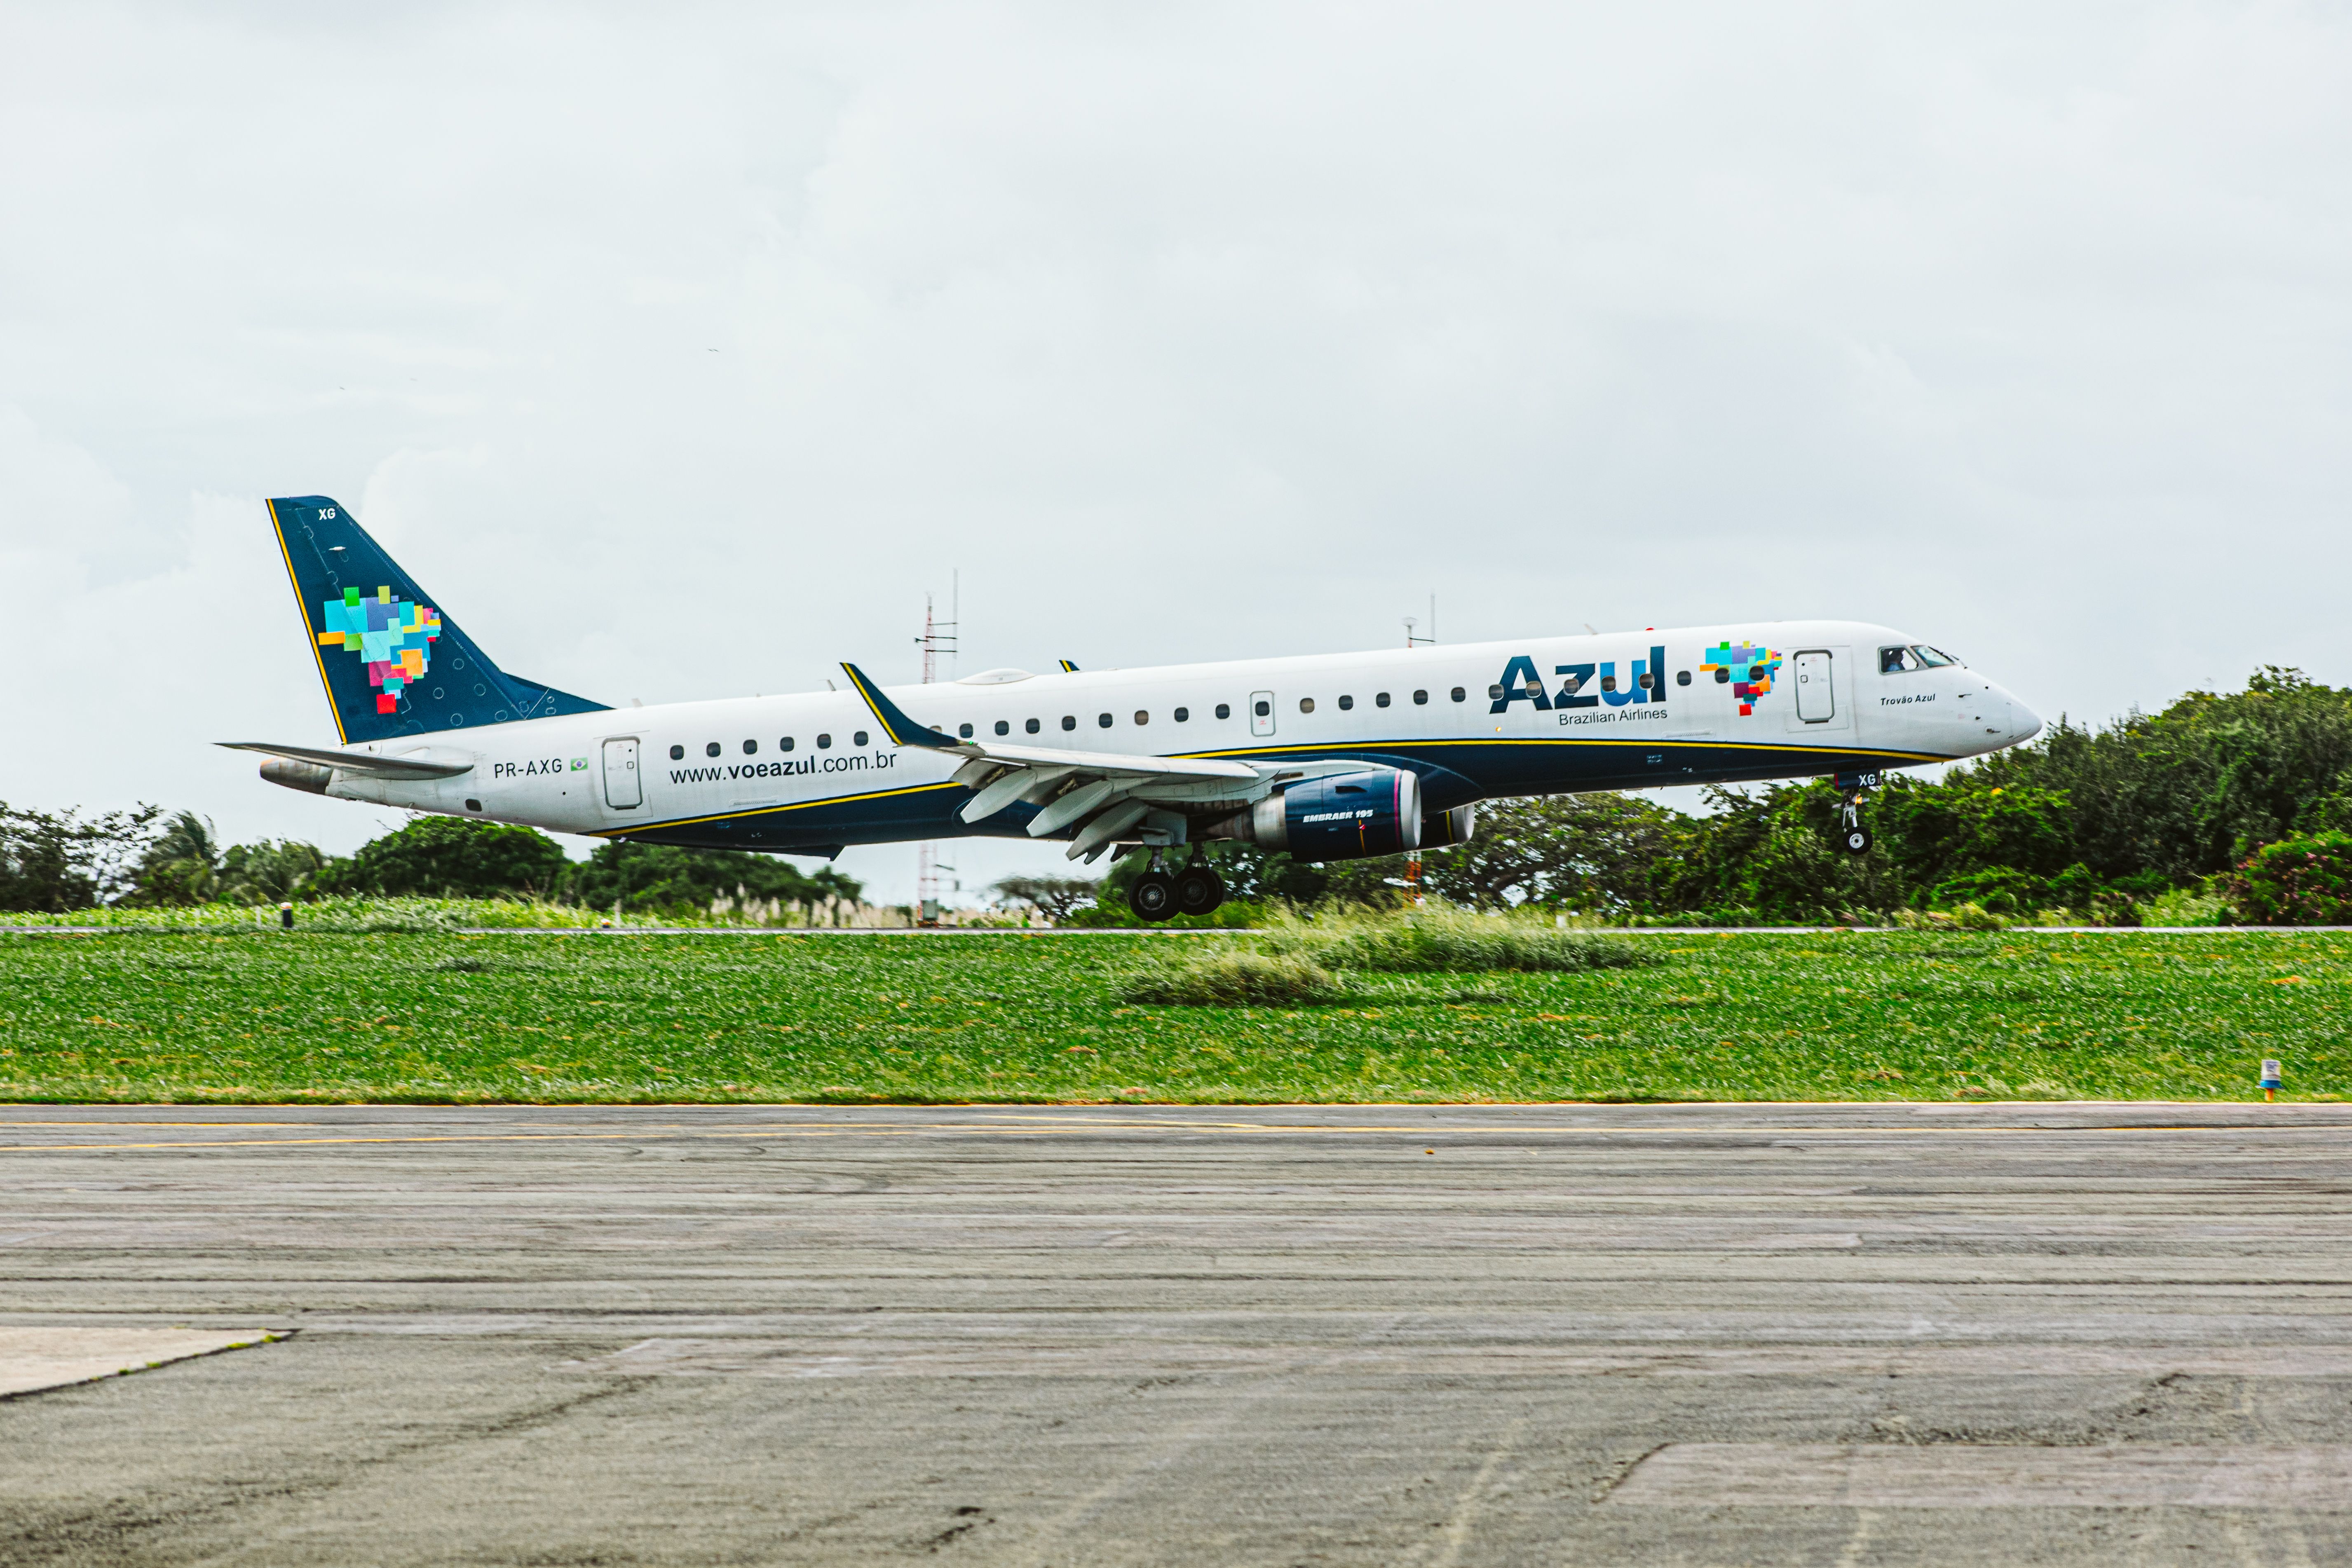 An Azul aircraft at Fernando de Noronha